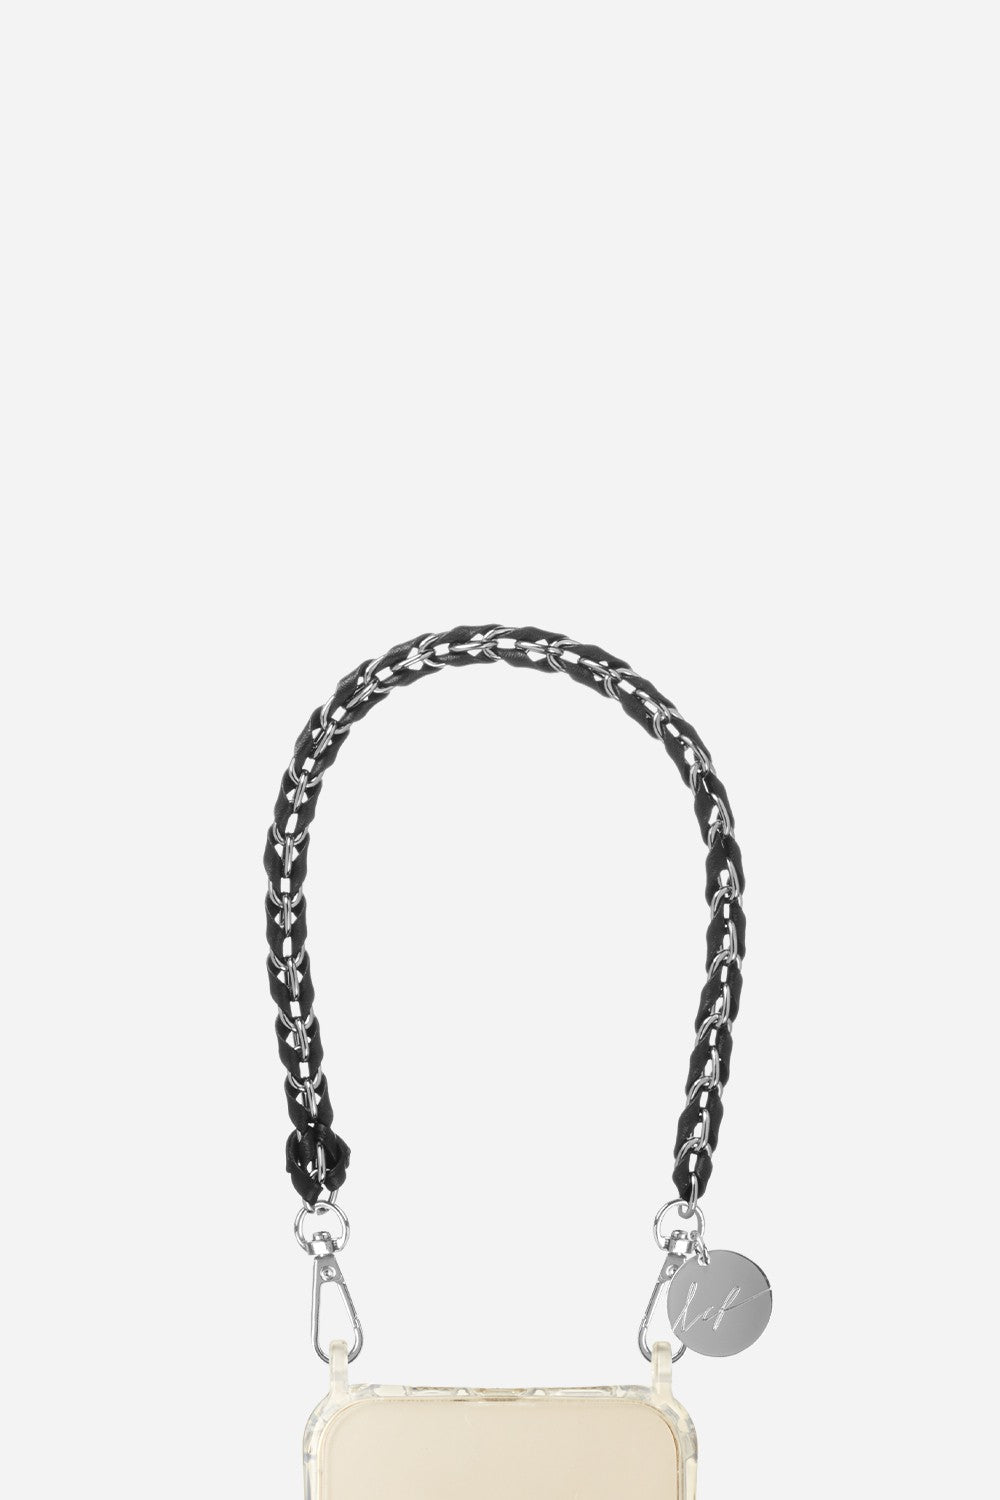 Short Lou Chain Black 40 cm